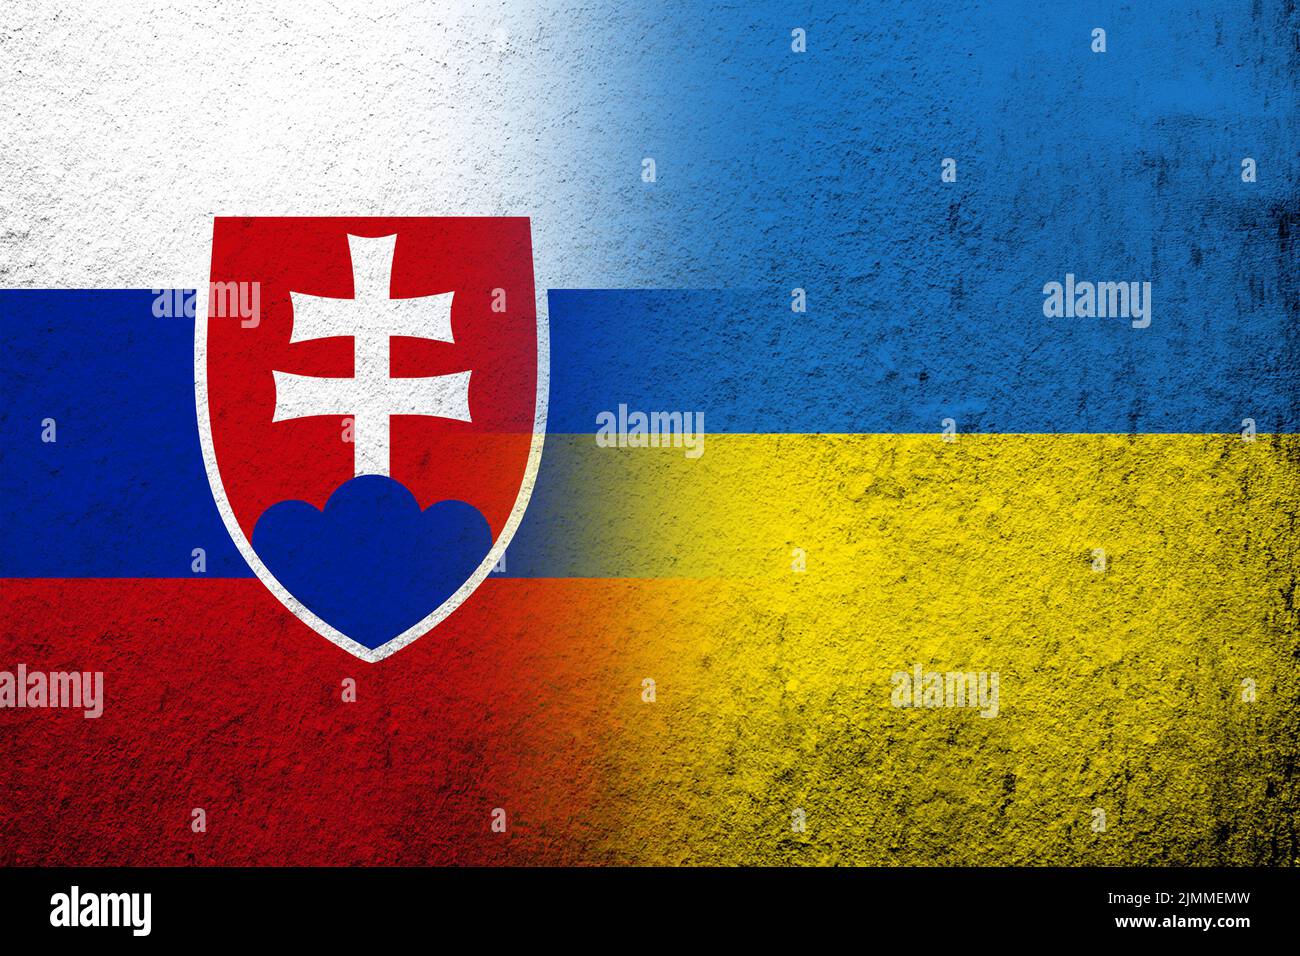 Drapeau national de la Slovaquie avec drapeau national de l'Ukraine. Grunge l'arrière-plan Banque D'Images